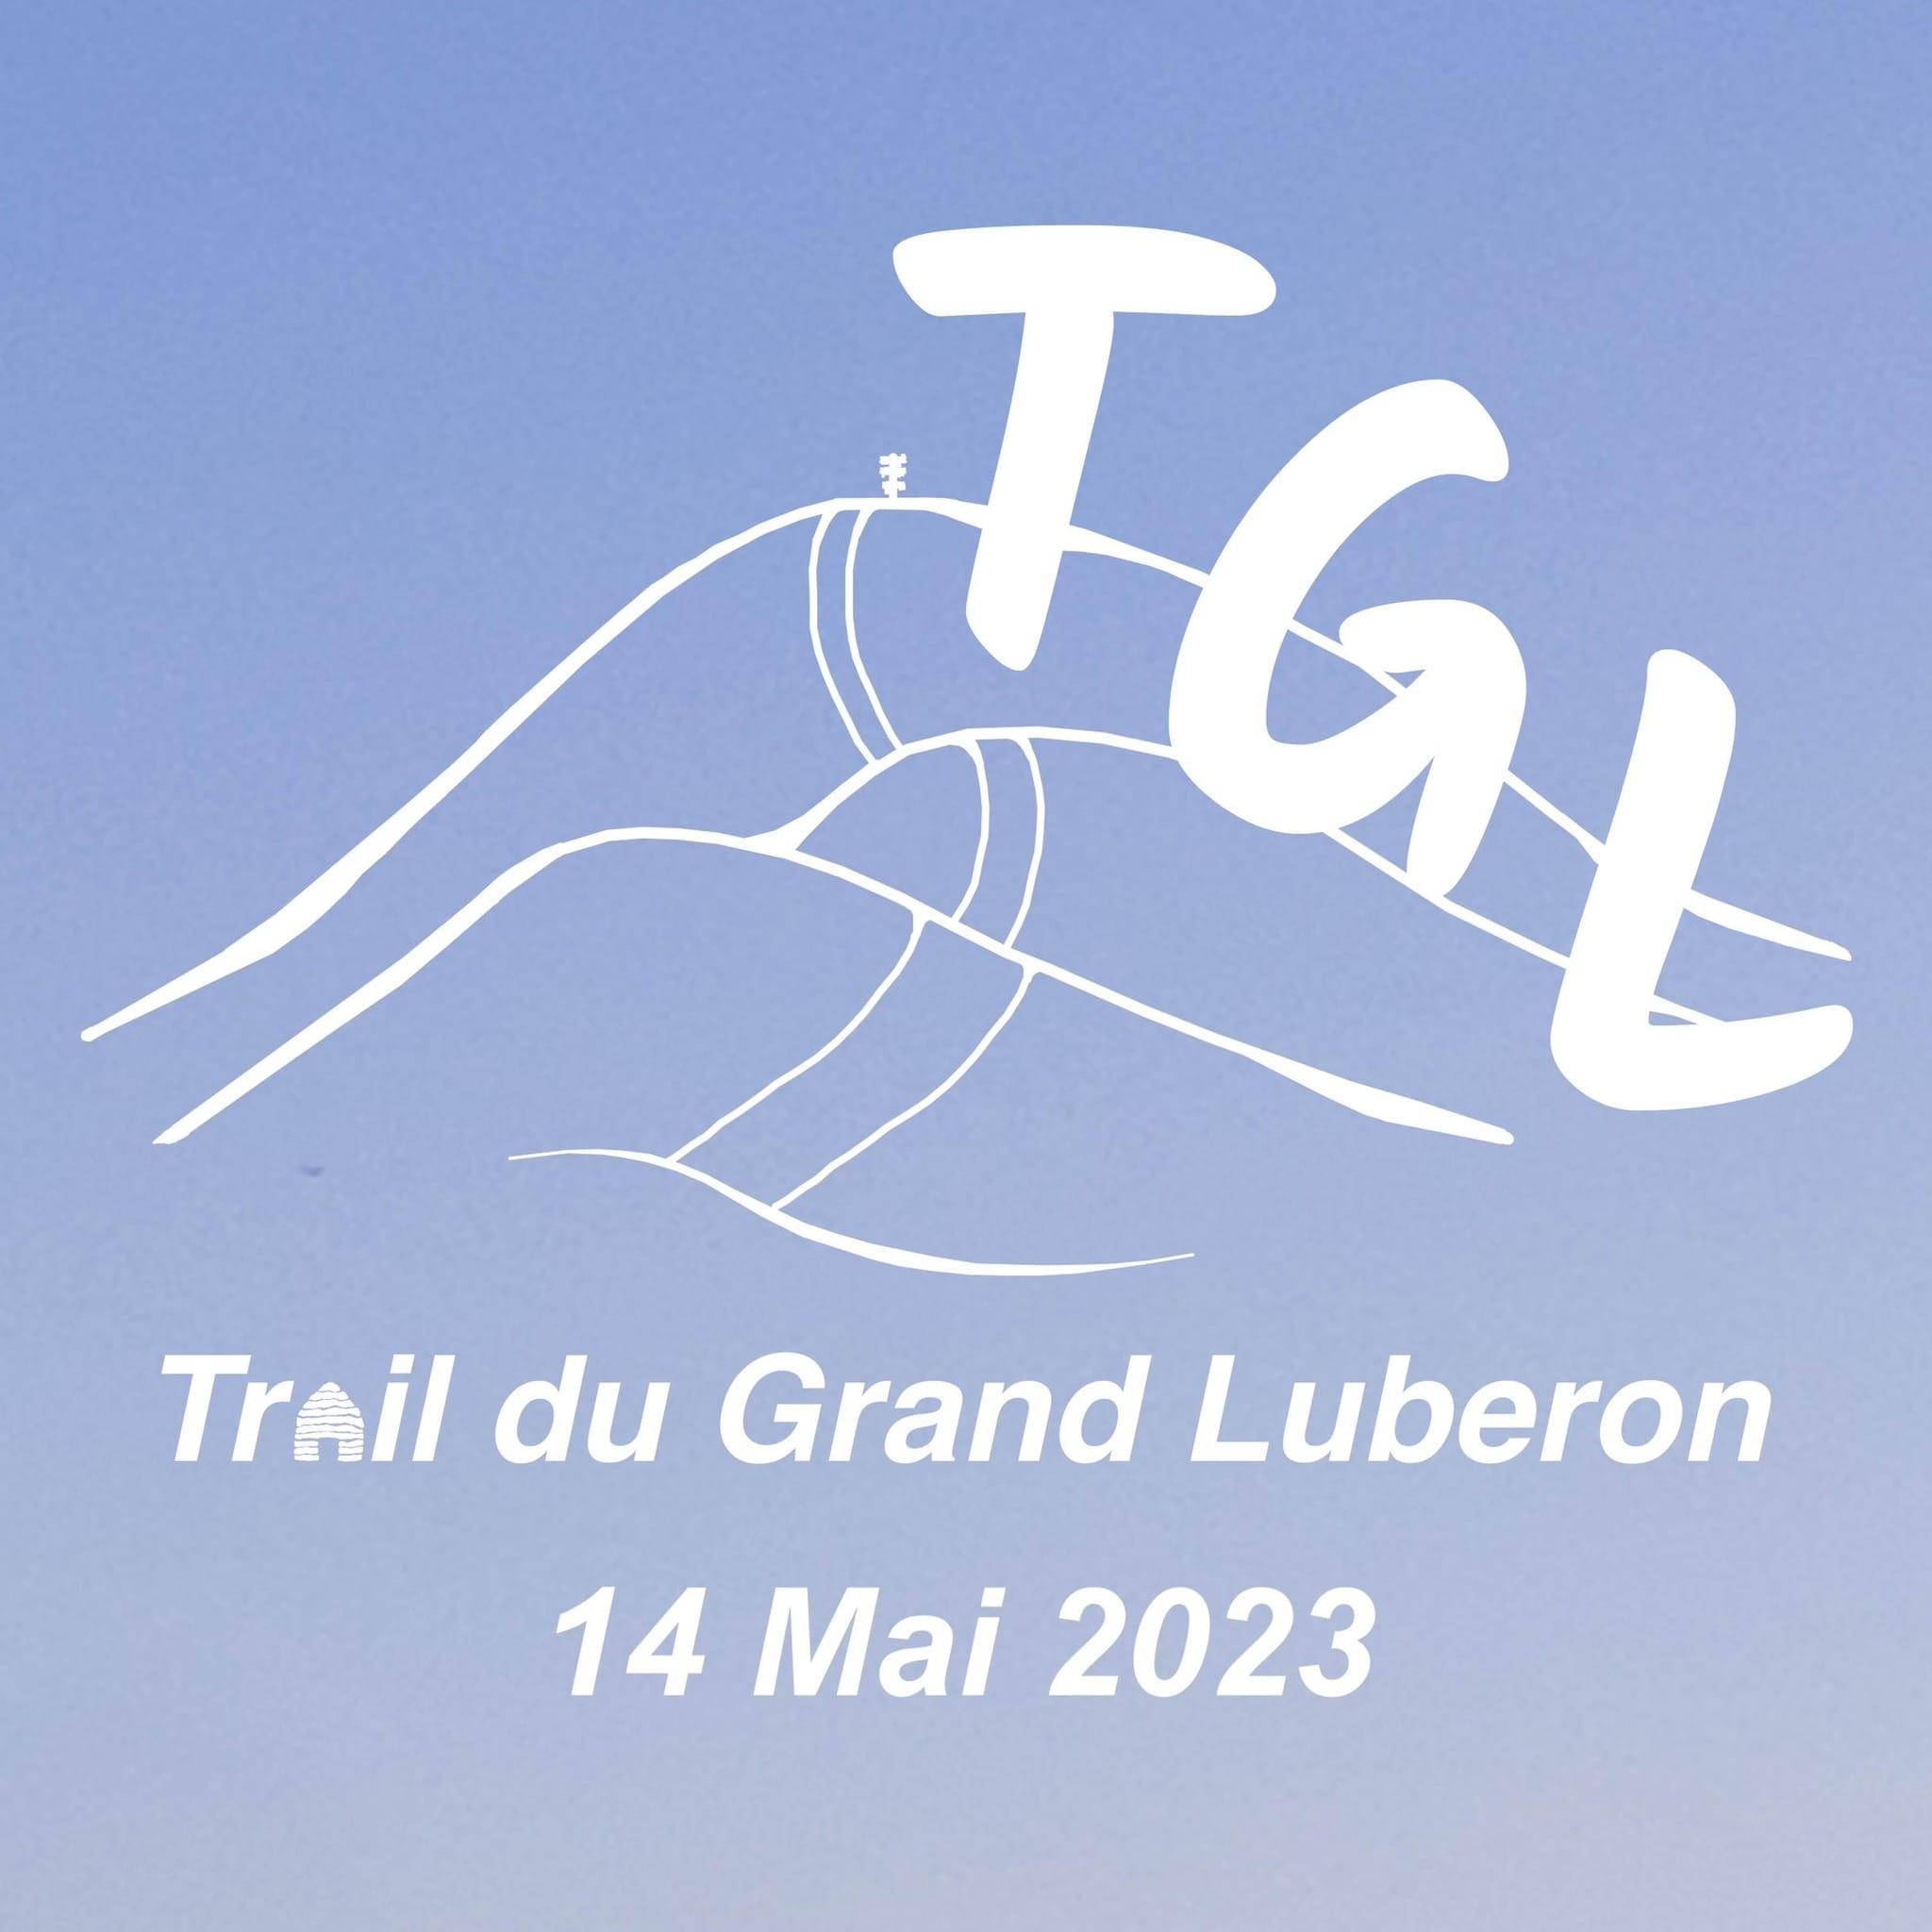 Trail du Grand Luberon 2023